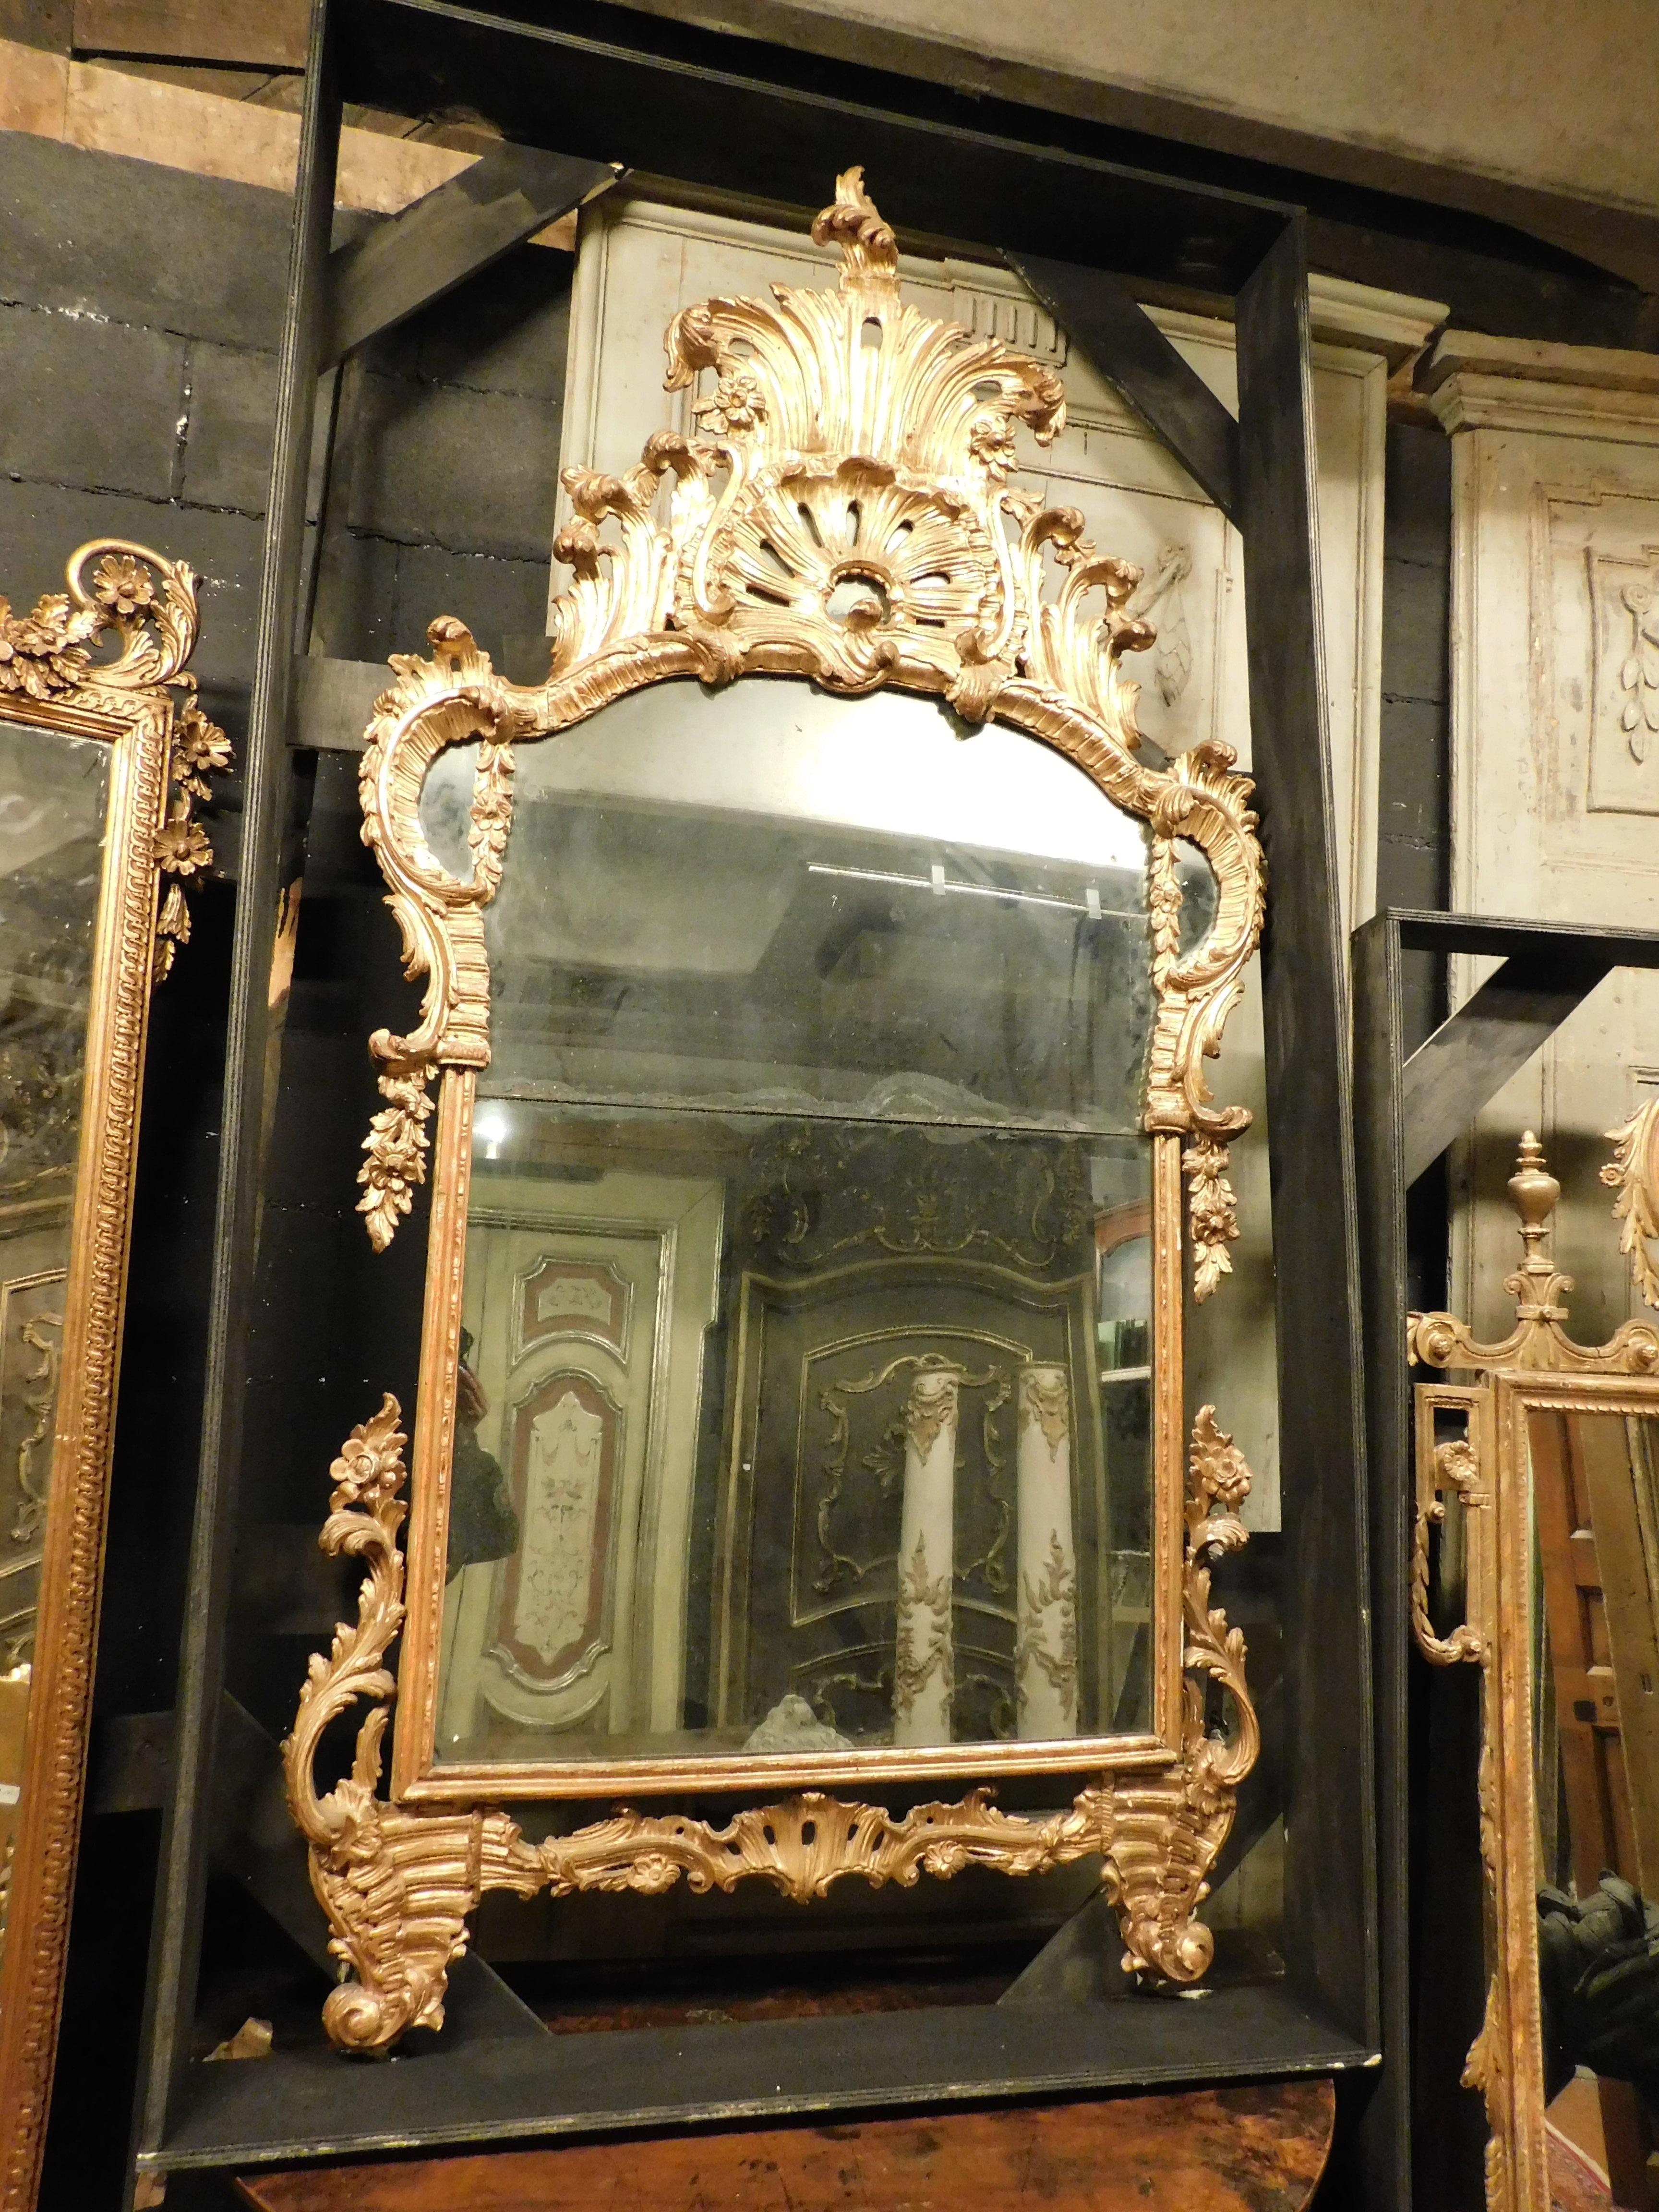 Antiker, antiker und bedeutender freistehender Spiegel, Spiegel mit vergoldetem Holzrahmen und reich geschnitztem Cymatium mit barocken Voluten, originaler Spiegel, gebaut in Italien, aus dem 18. Jahrhundert, aus Piemont, großes historisches und